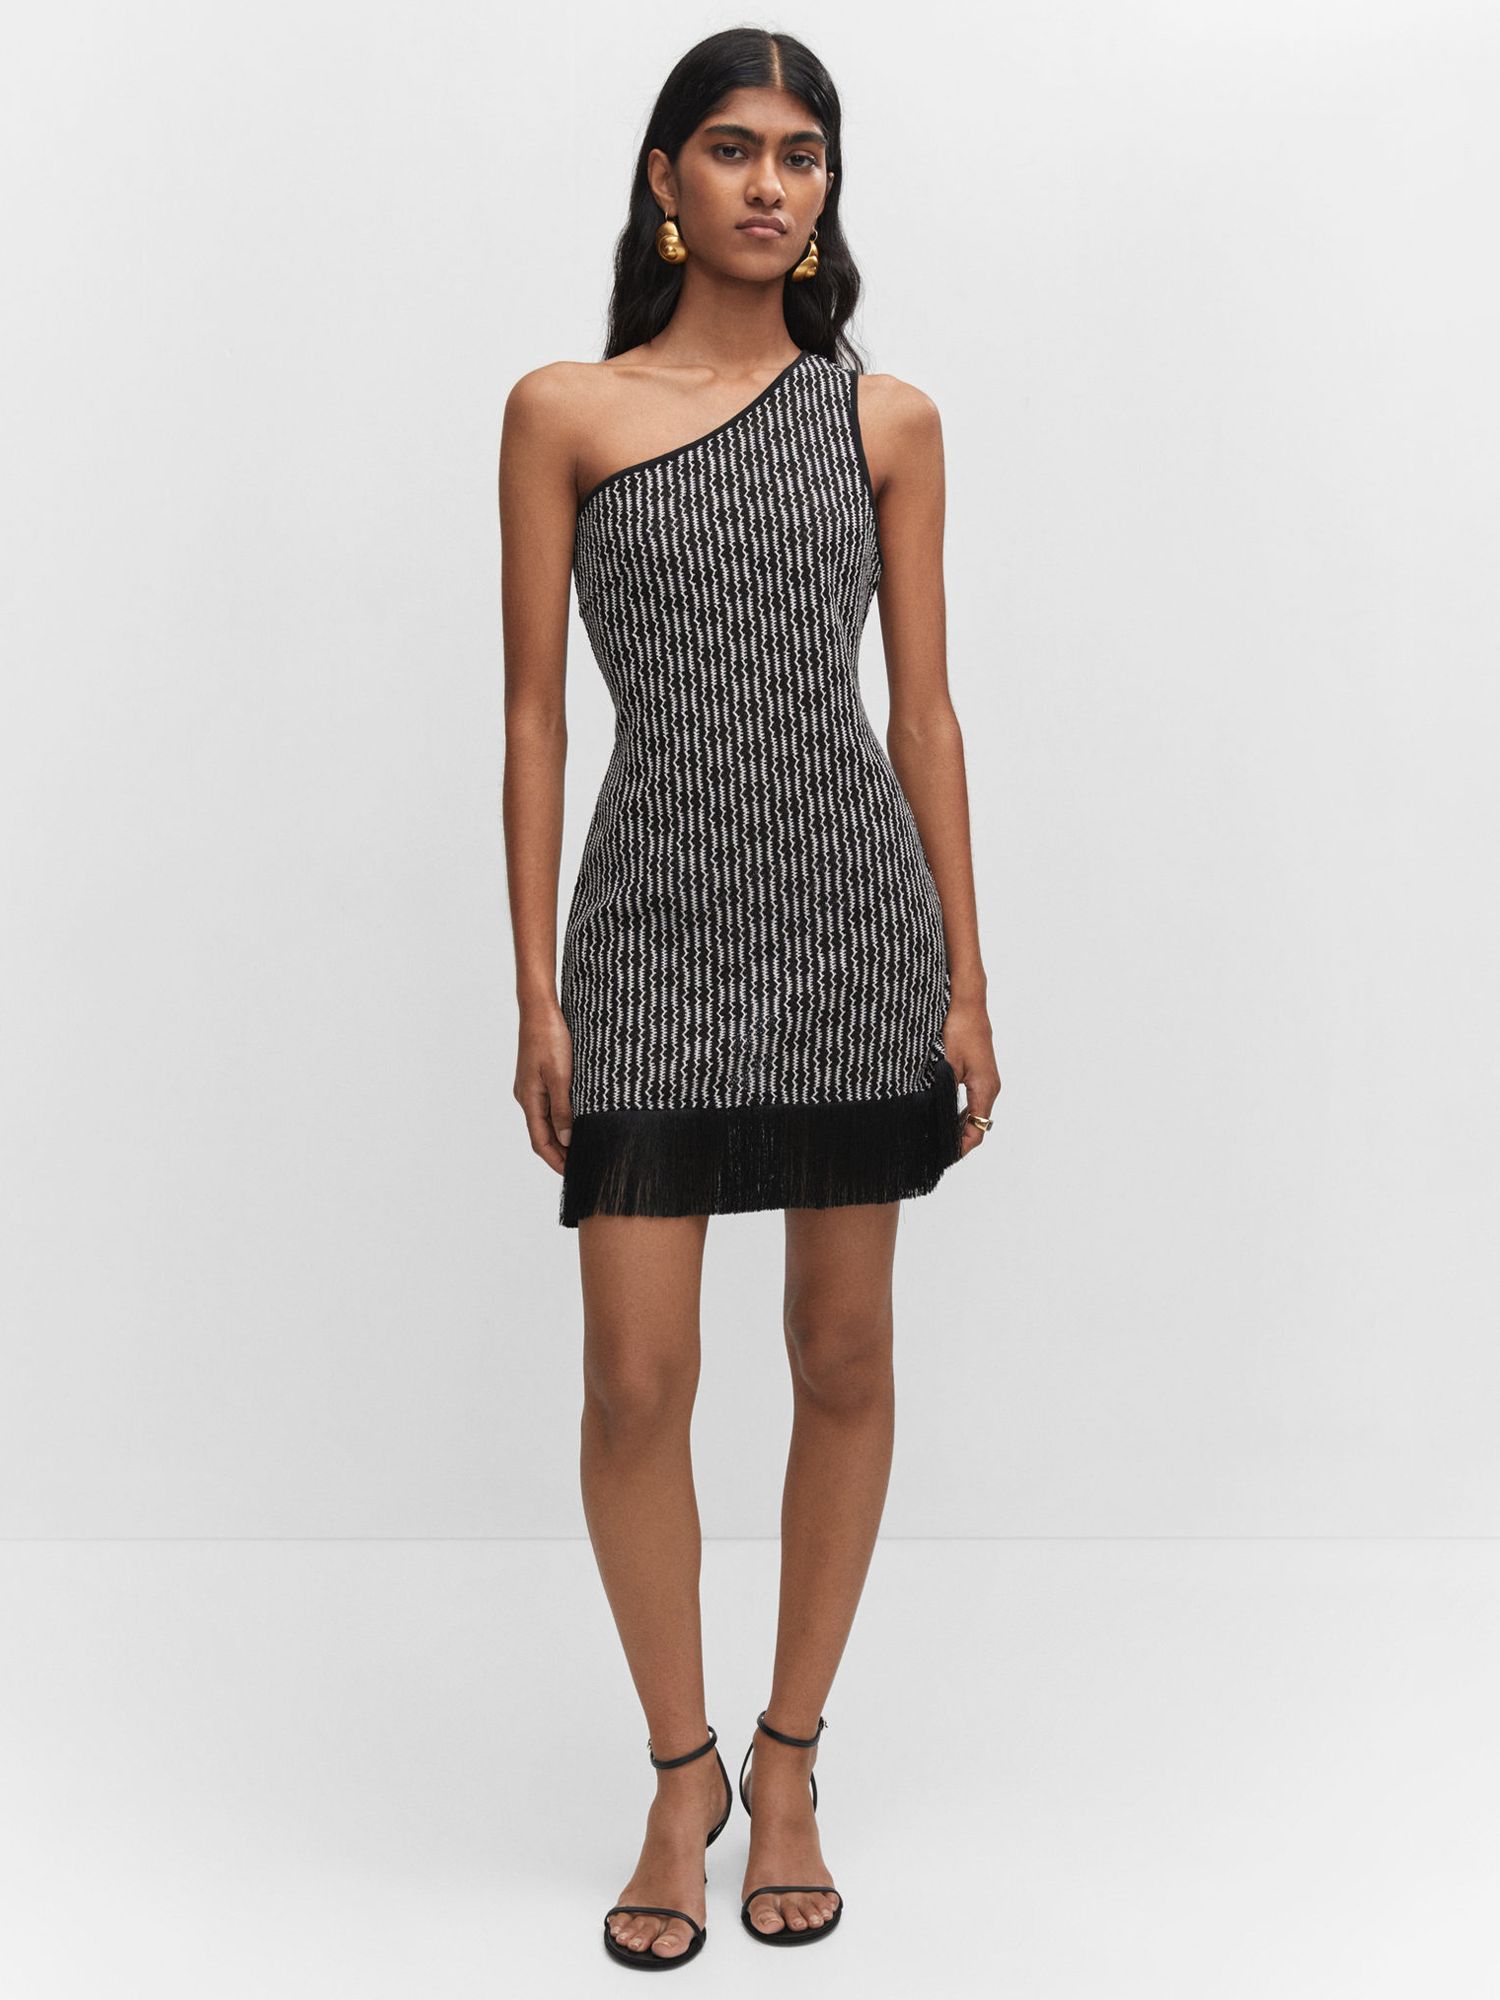 Mango Rusti Fringed Mini Dress, Black/White at John Lewis & Partners